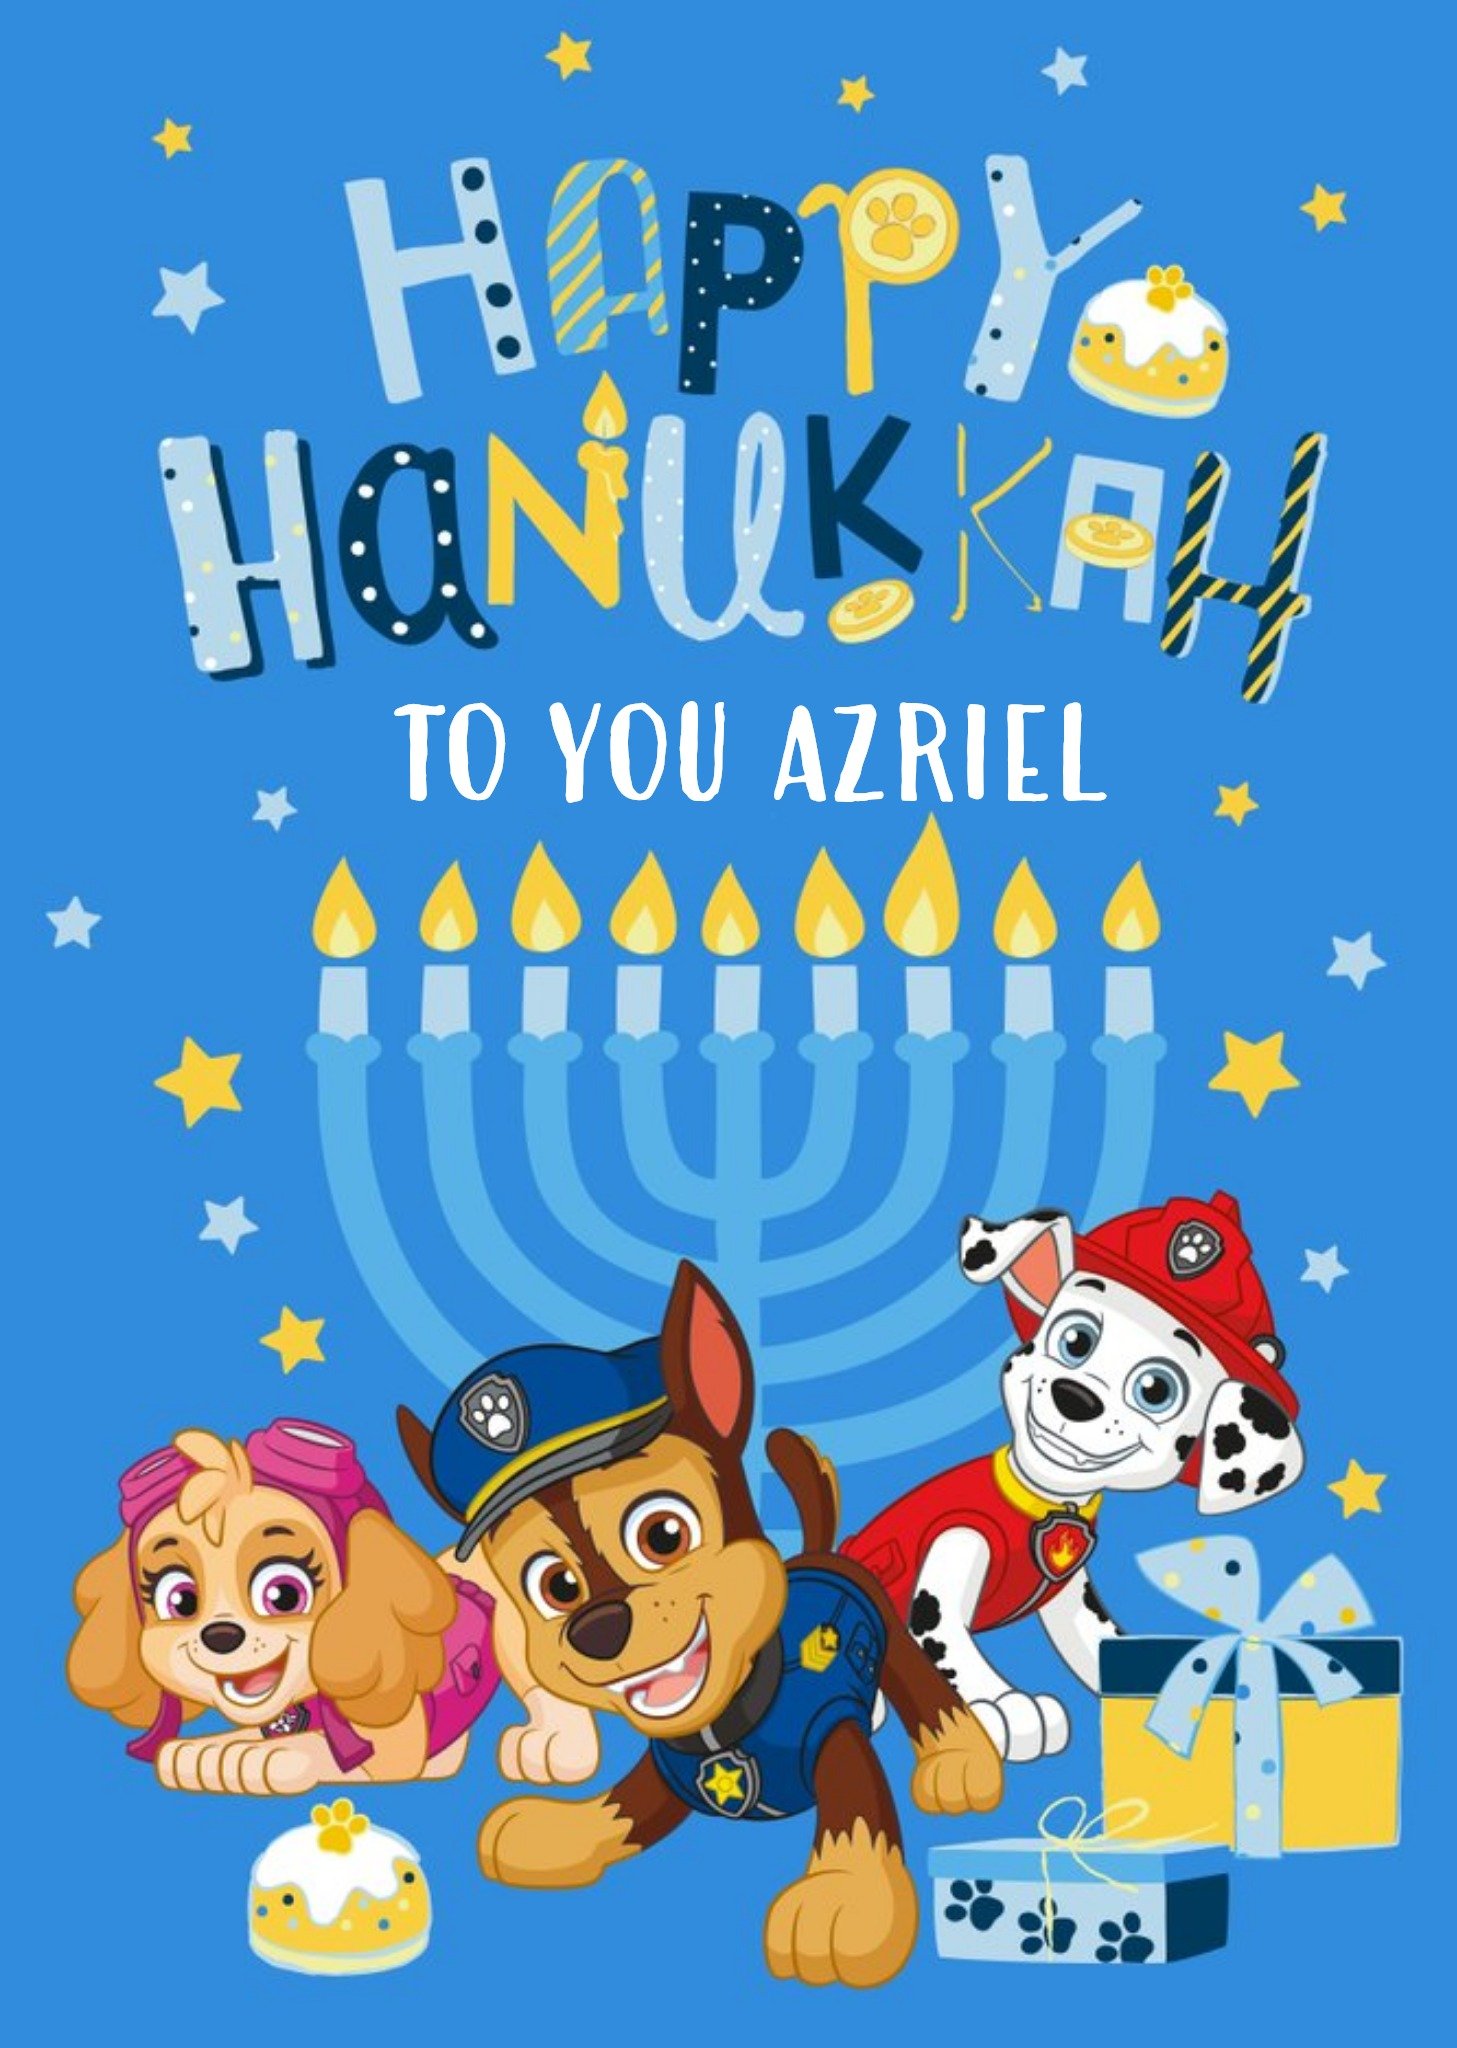 Nickelodeon Paw Patrol Happy Hankkah Card Ecard